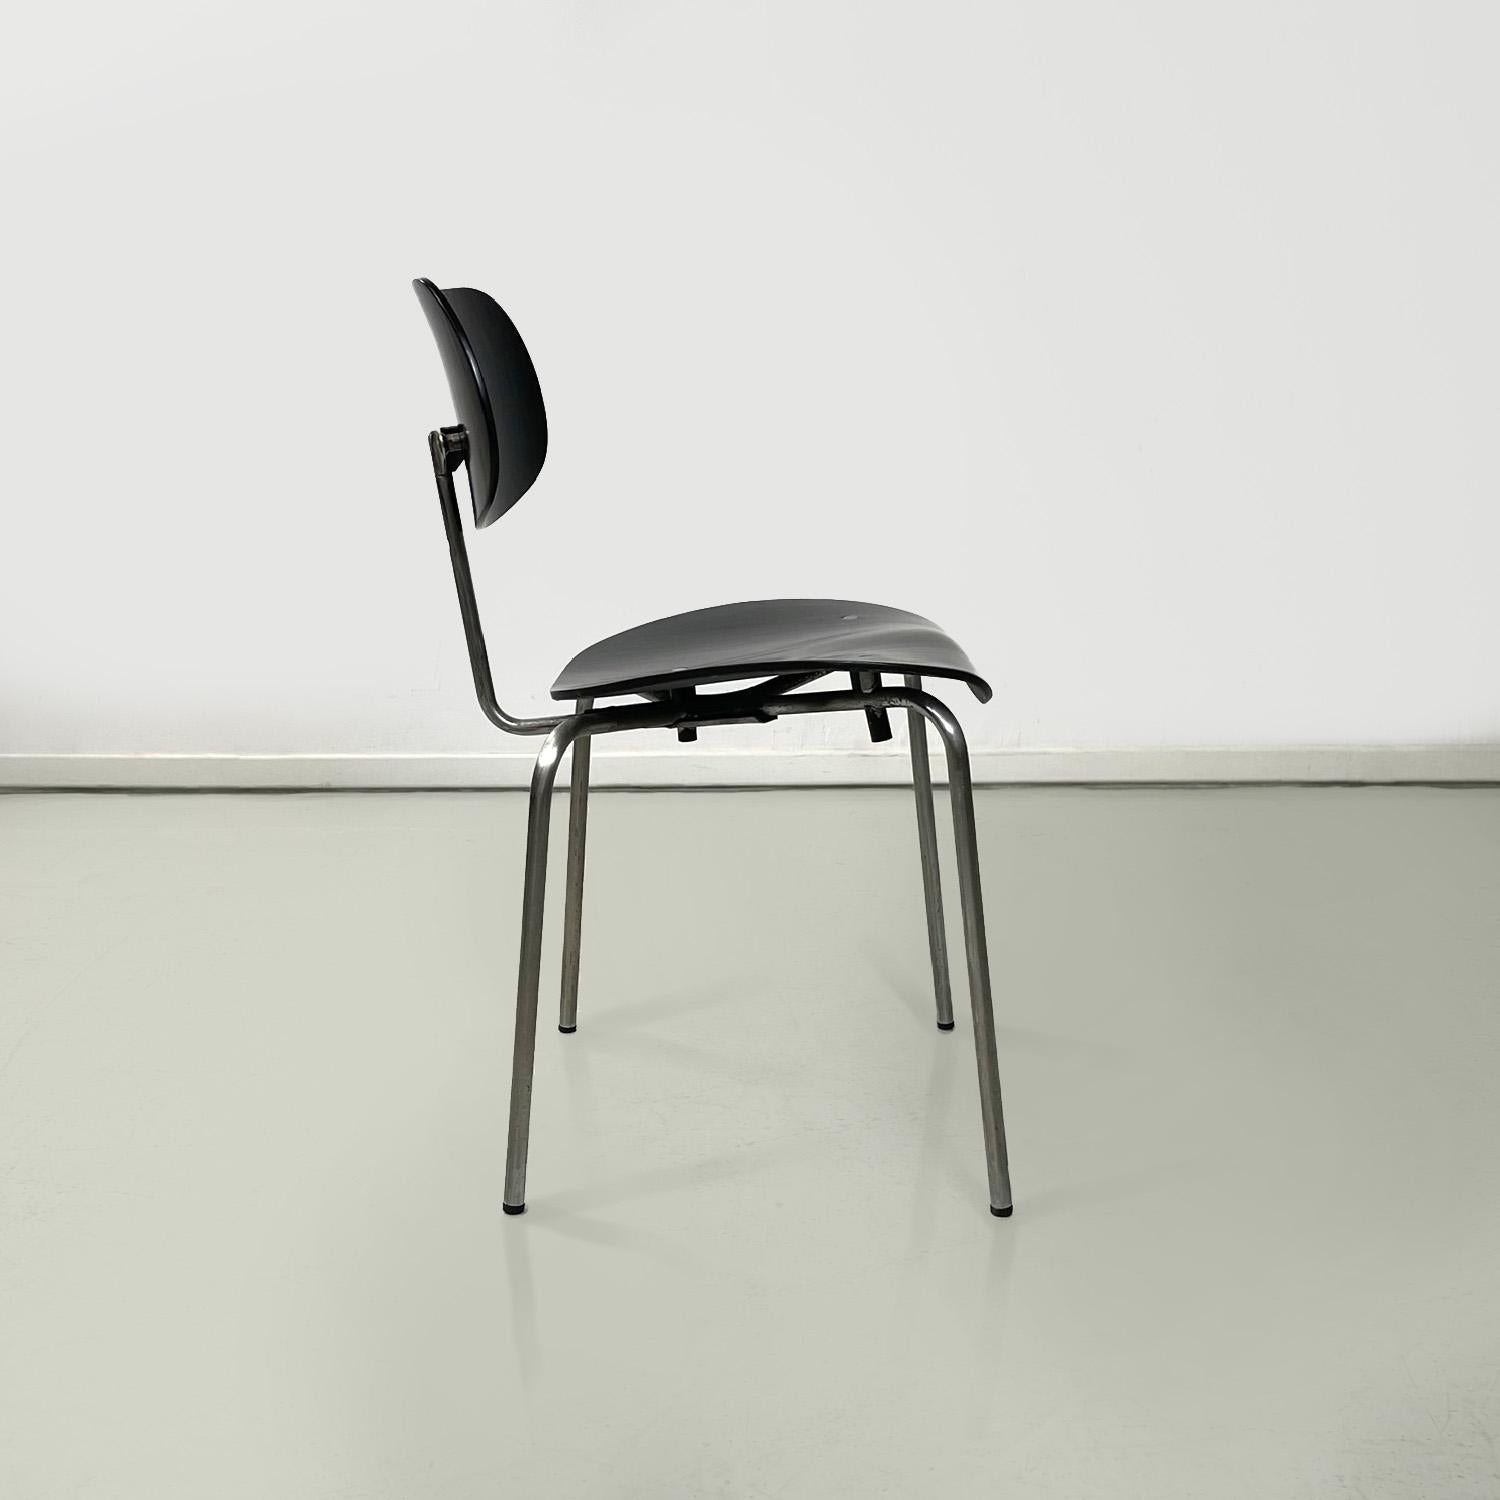 Mid-Century Modern German mid-century modern chair SE 68 by Egon Eiermann for Wilde + Spieth, 1950s